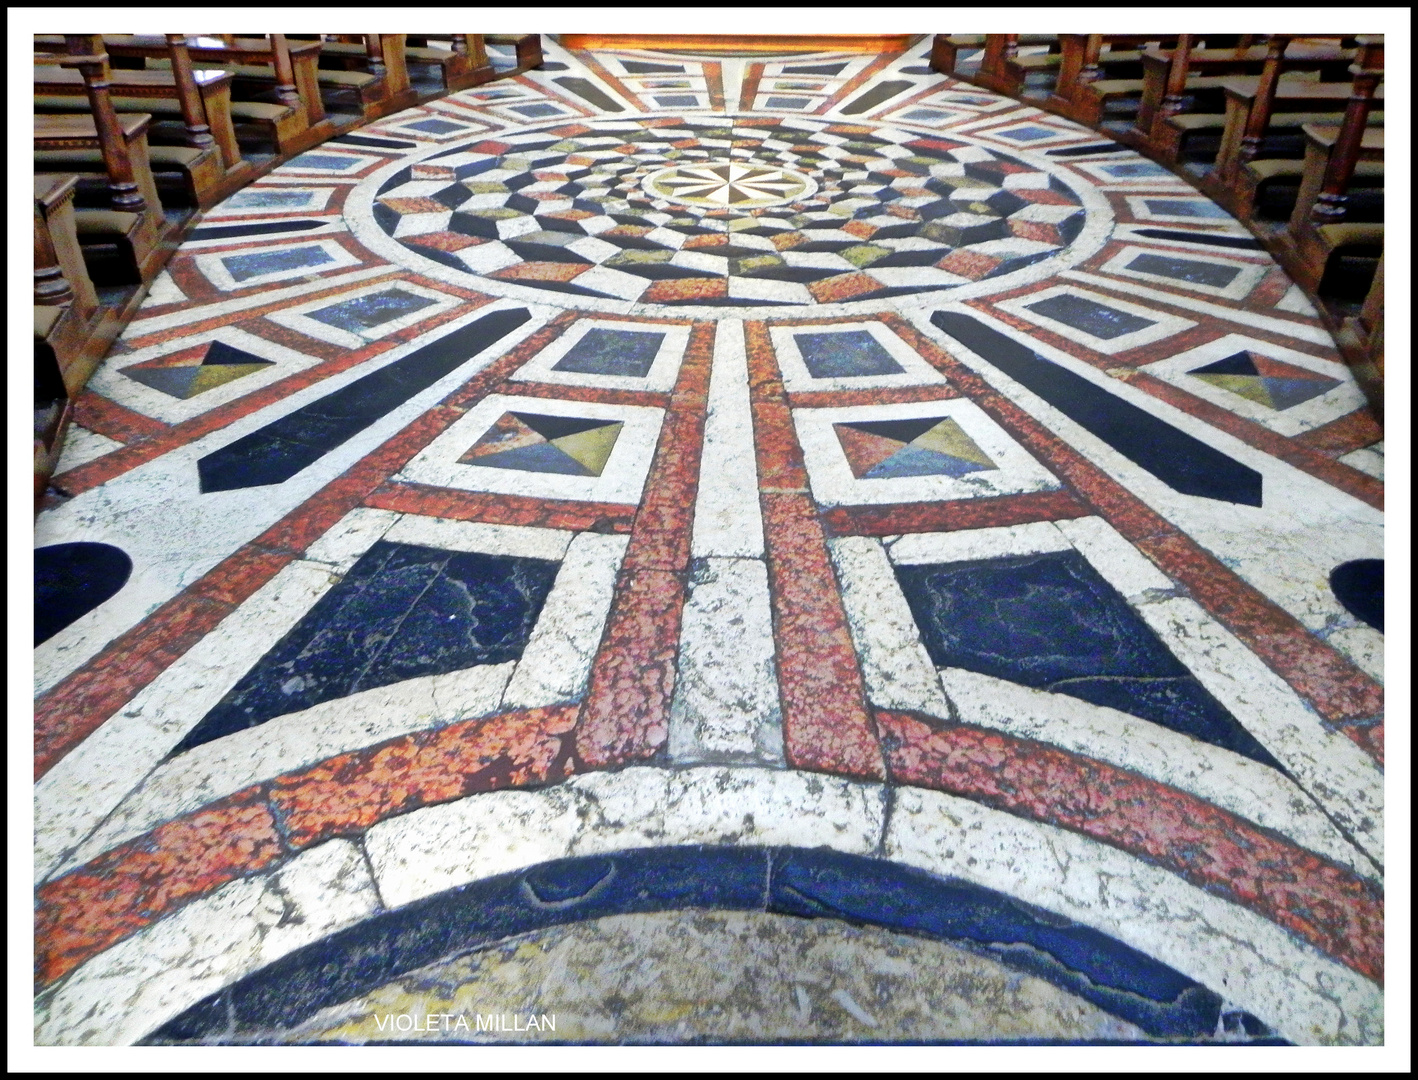 el piso de una iglesia del norte de italia